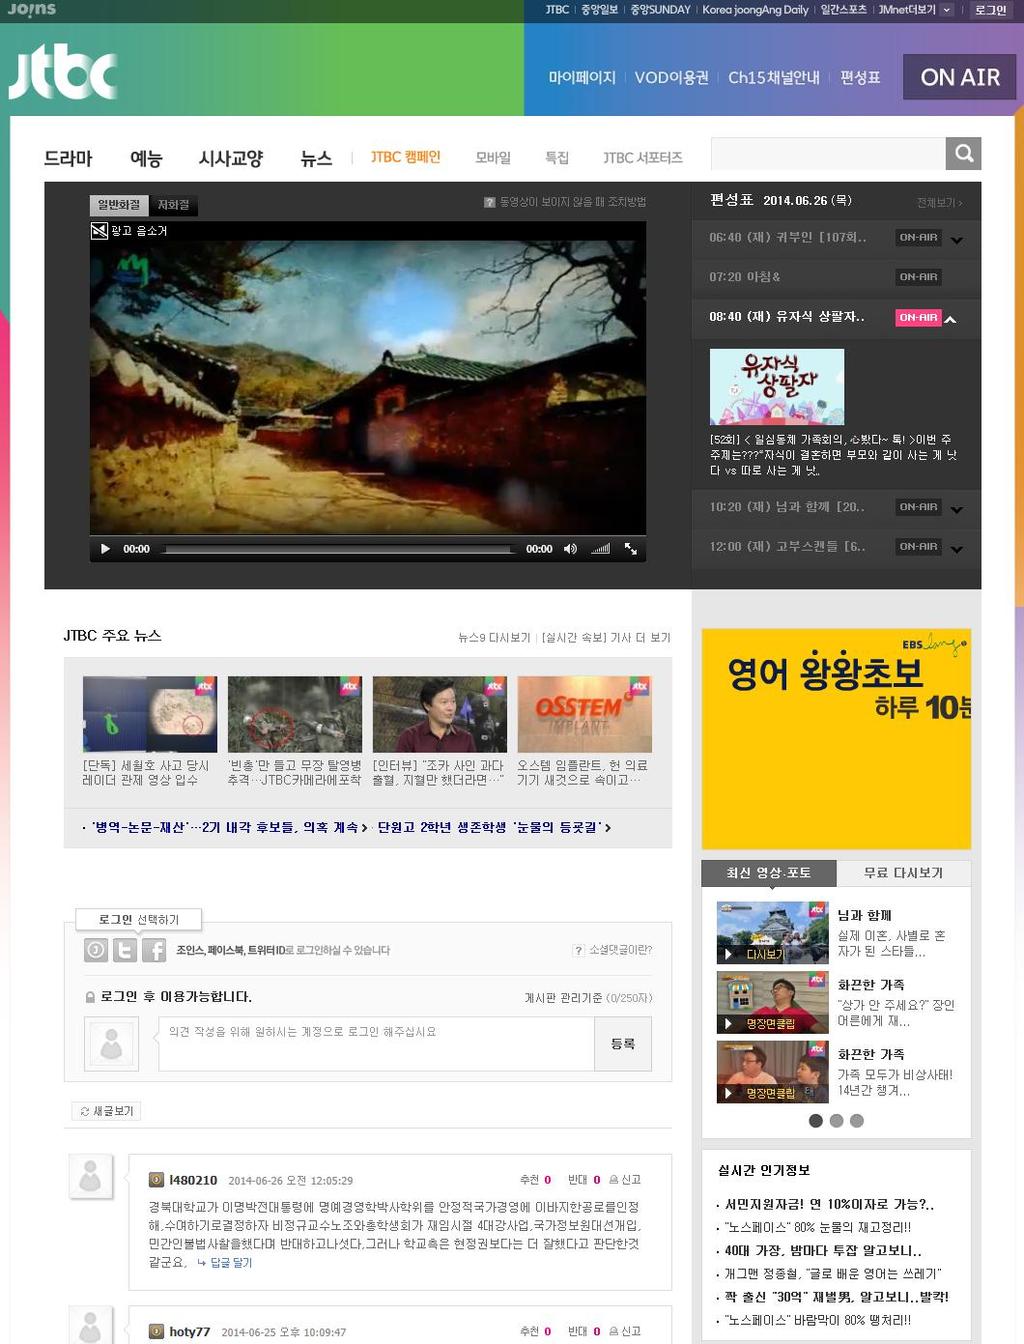 뉴미디어 JTBC 온에어동영상중간광고 JTBC ON AIR 중간광고노출 원하는프로그램타겟가능